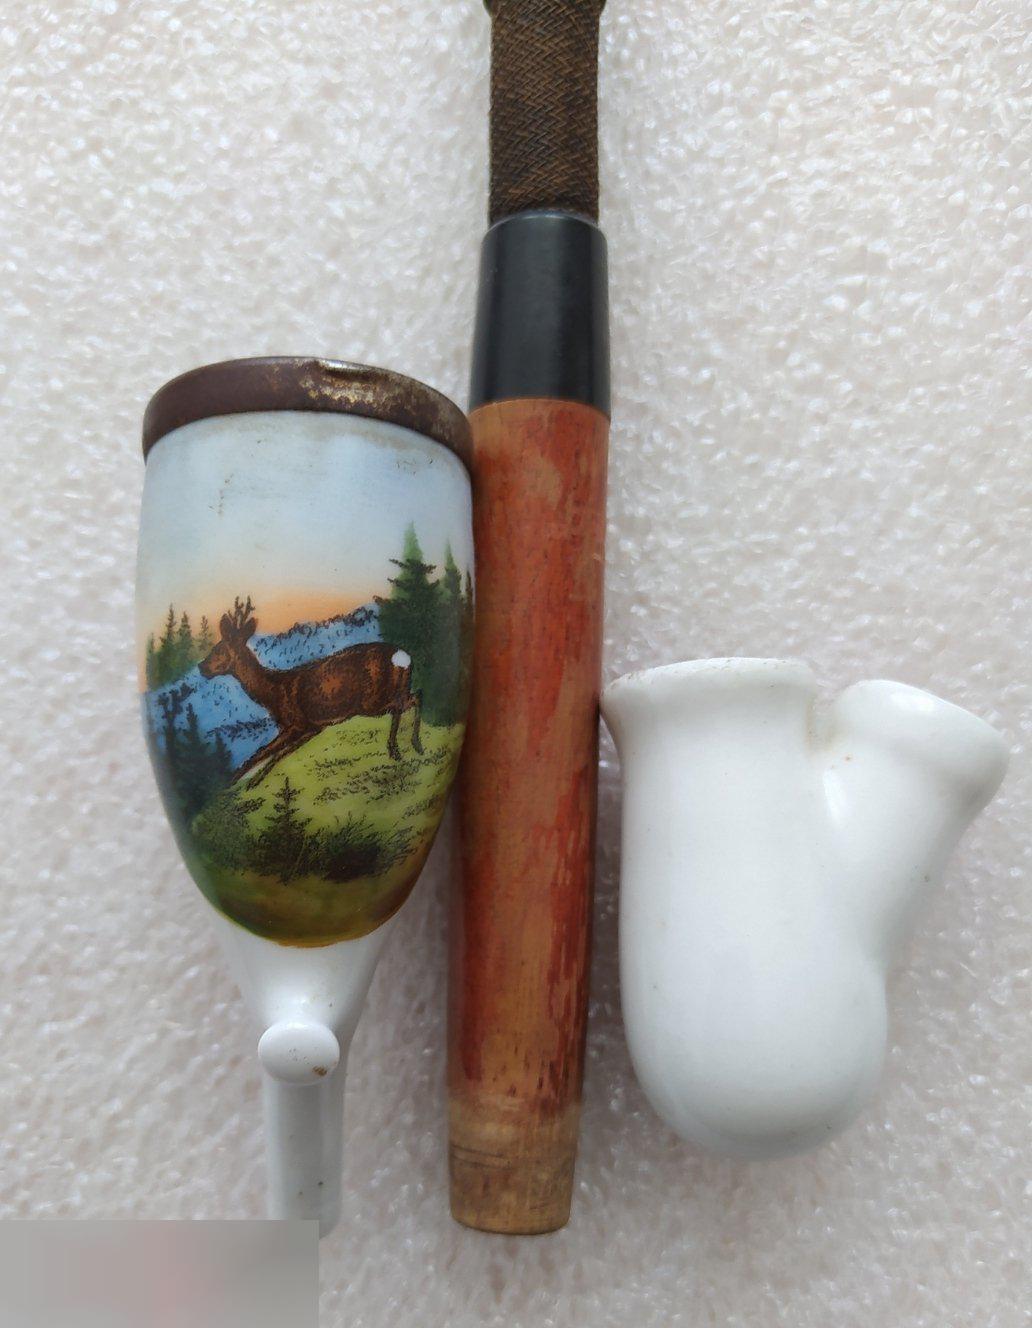 Трубка Курительная Винтаж, Предположительно Германия, Керамика, Дерево, Пластик 3